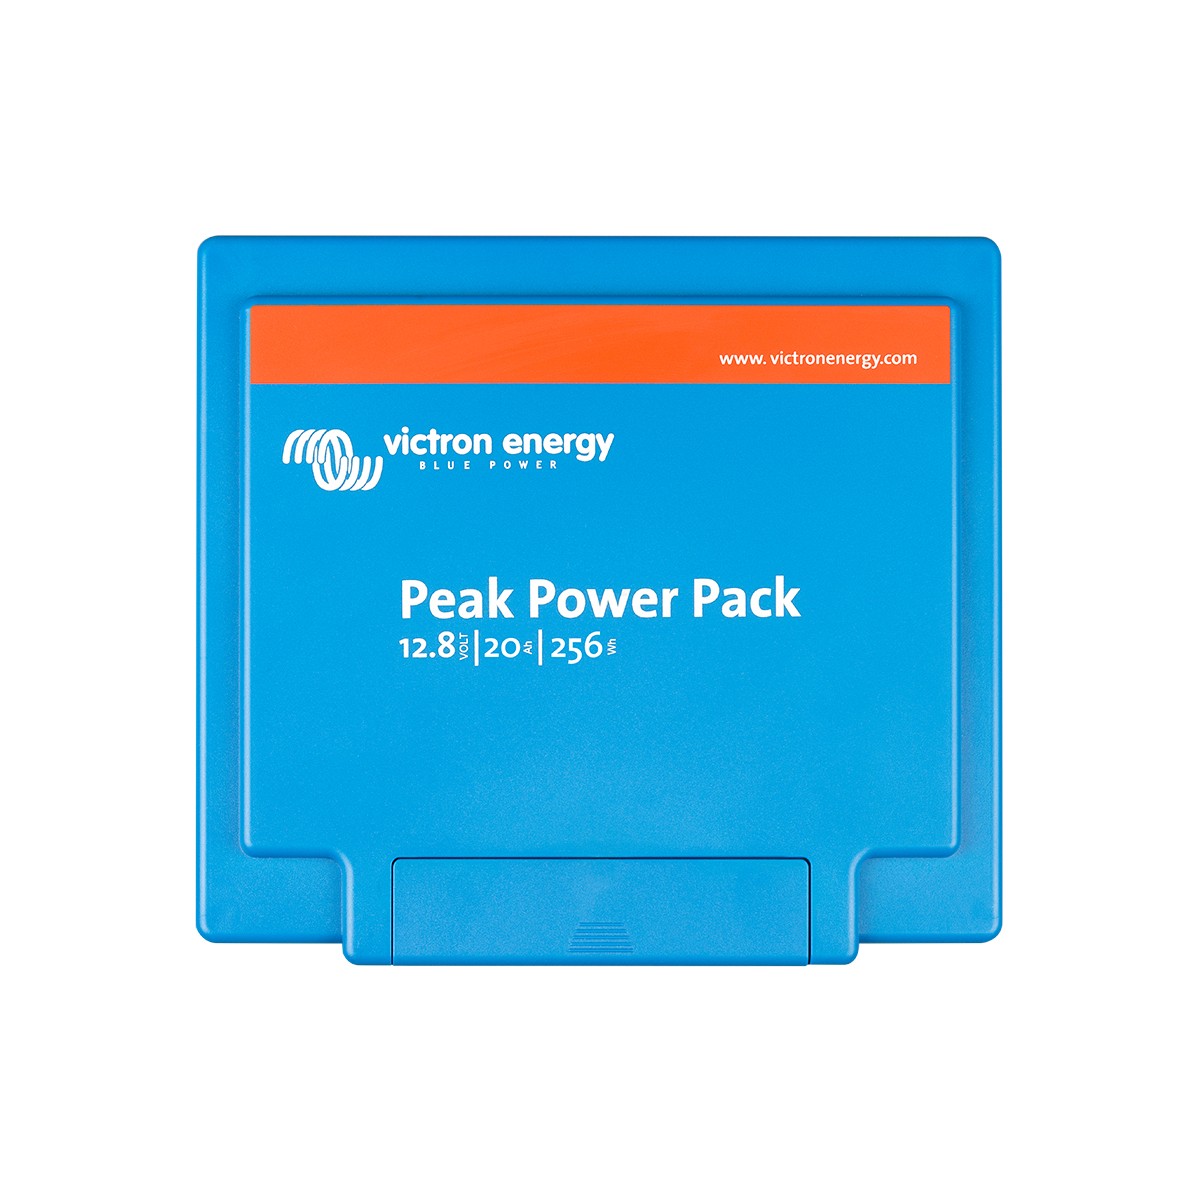 Akku Peak Power Pack 128 V/20 Ah-256 Wh Victron Energy